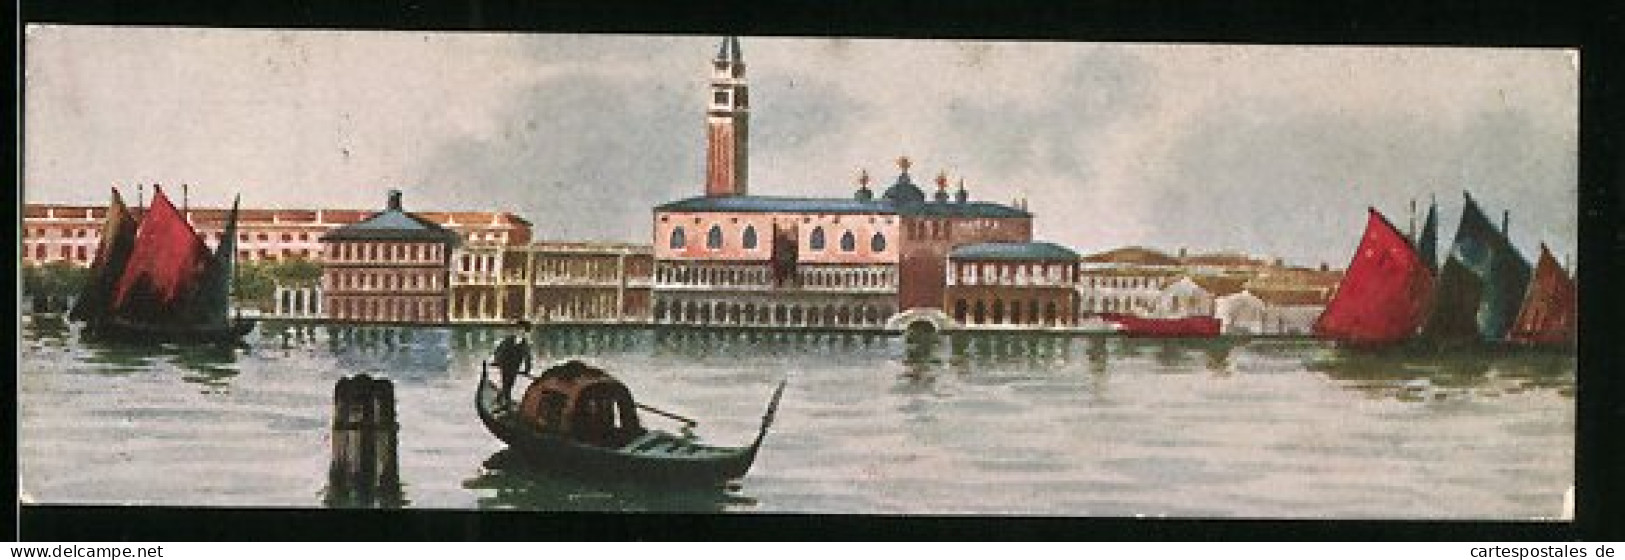 Mini-Cartolina Venezia, Panorama  - Venezia (Venedig)